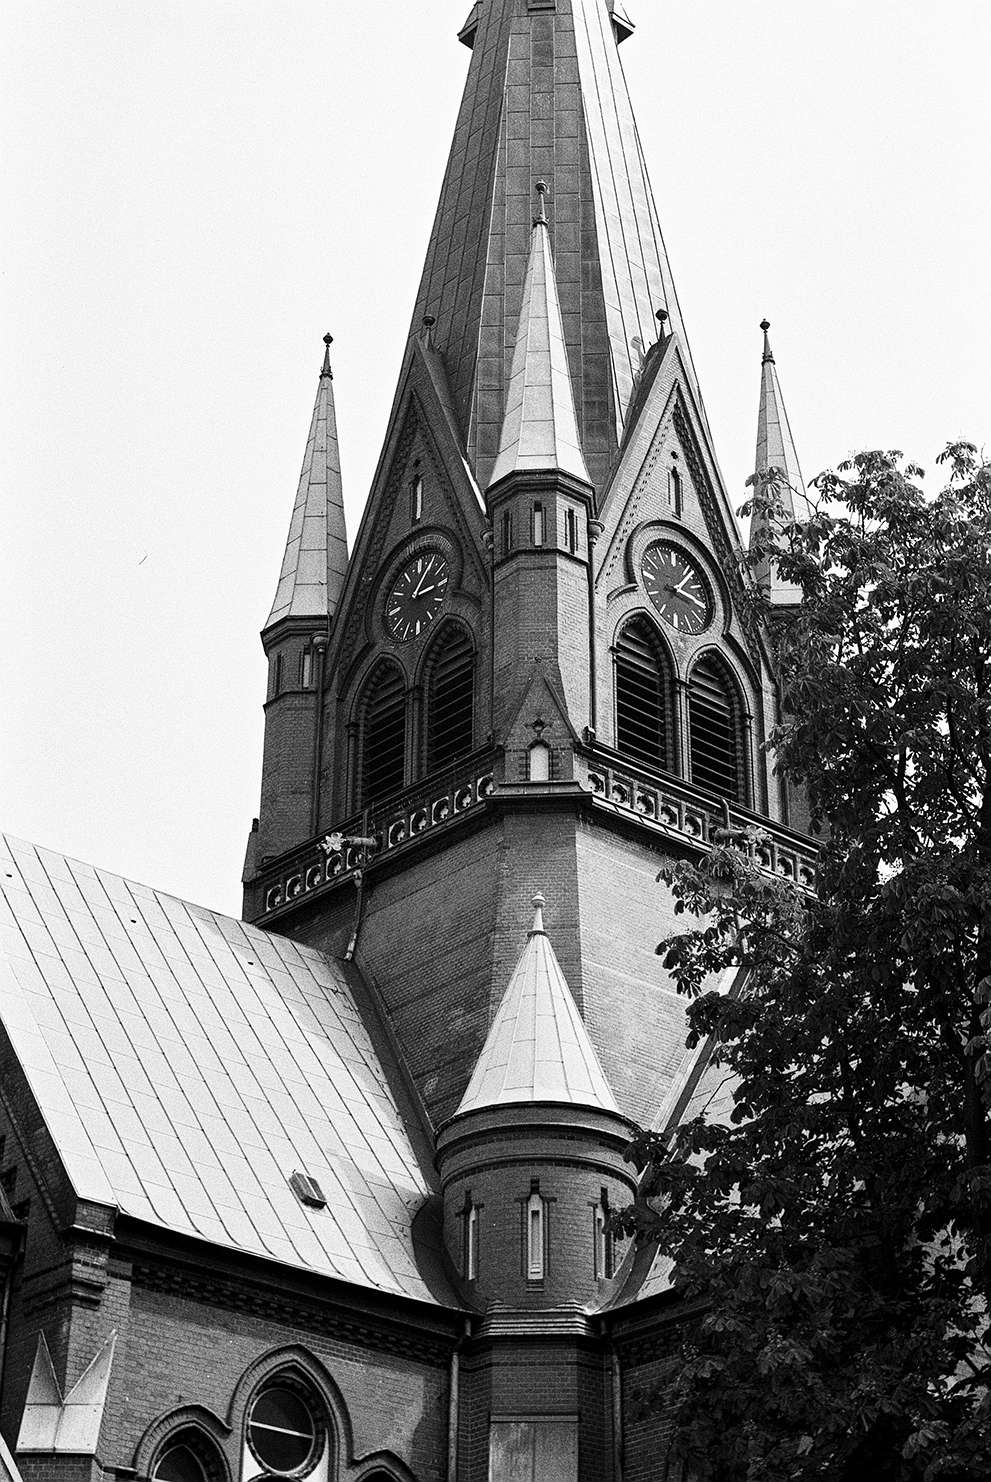 The tower of the Kreuzkirche in Hamburg-Ottensen. Shot in Ilford Delta 100